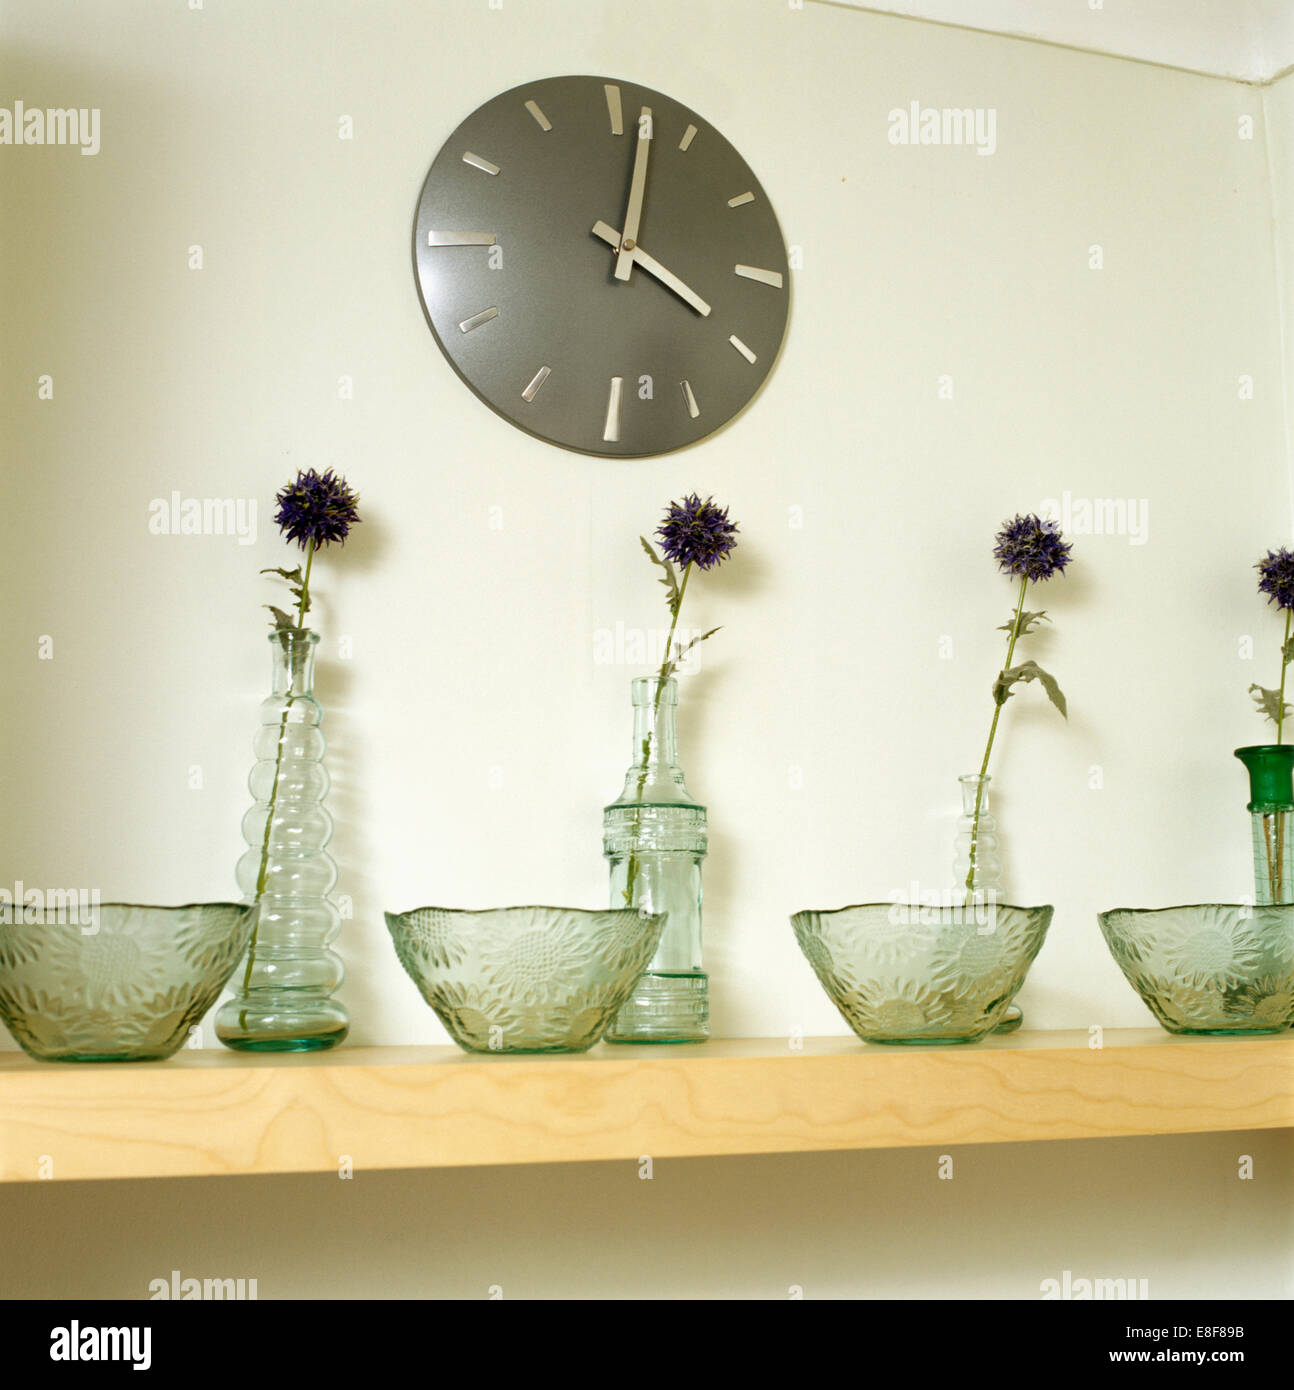 Runde Uhr an Wand Regal mit strukturiertem Glasschüsseln und Flaschen mit  Einzelblüten Stockfotografie - Alamy